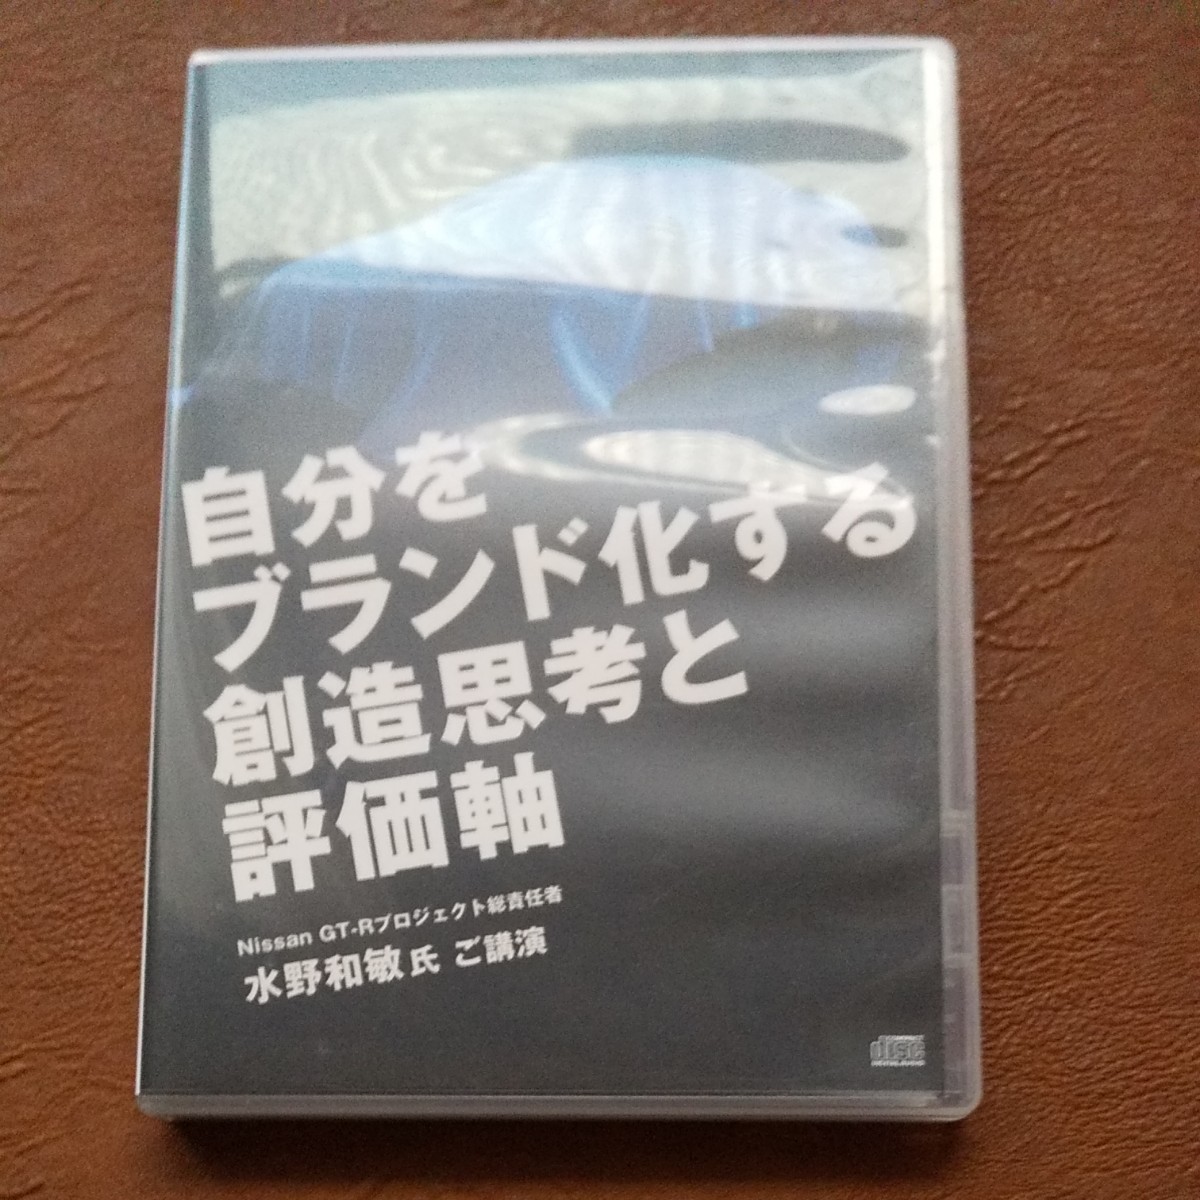 動画URL付　古市幸雄　日産 Nissan GT-R 水野和敏 自己啓発セミナー講演CD 自分をブランド化する創造思考と評価軸